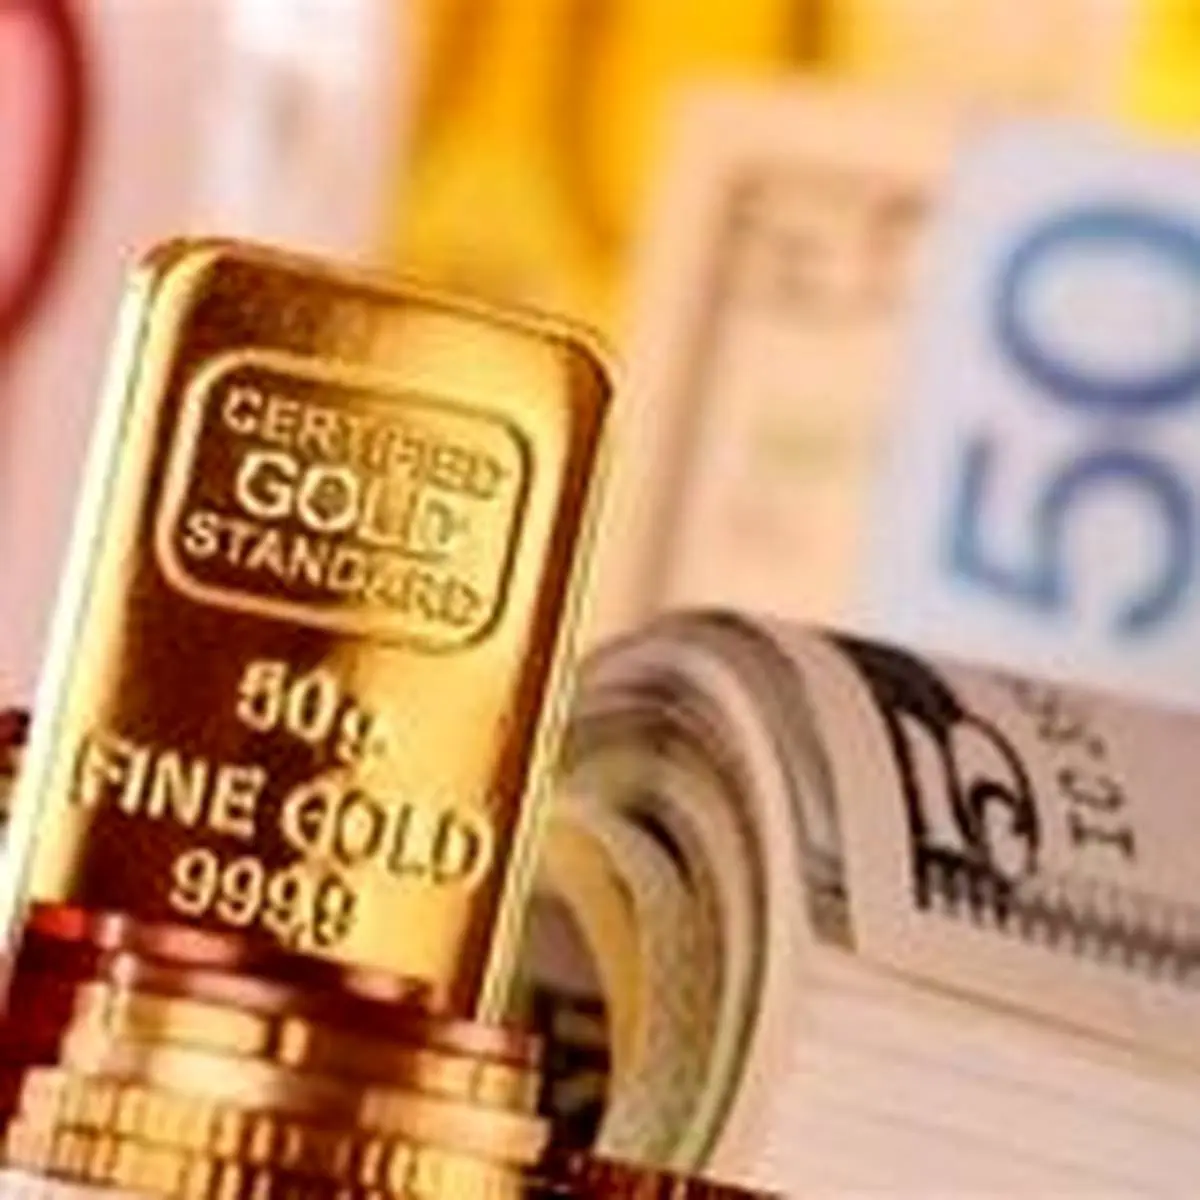 قیمت طلا، قیمت سکه، قیمت دلار، امروز  چهارشنبه 98/6/27+ تغییرات

